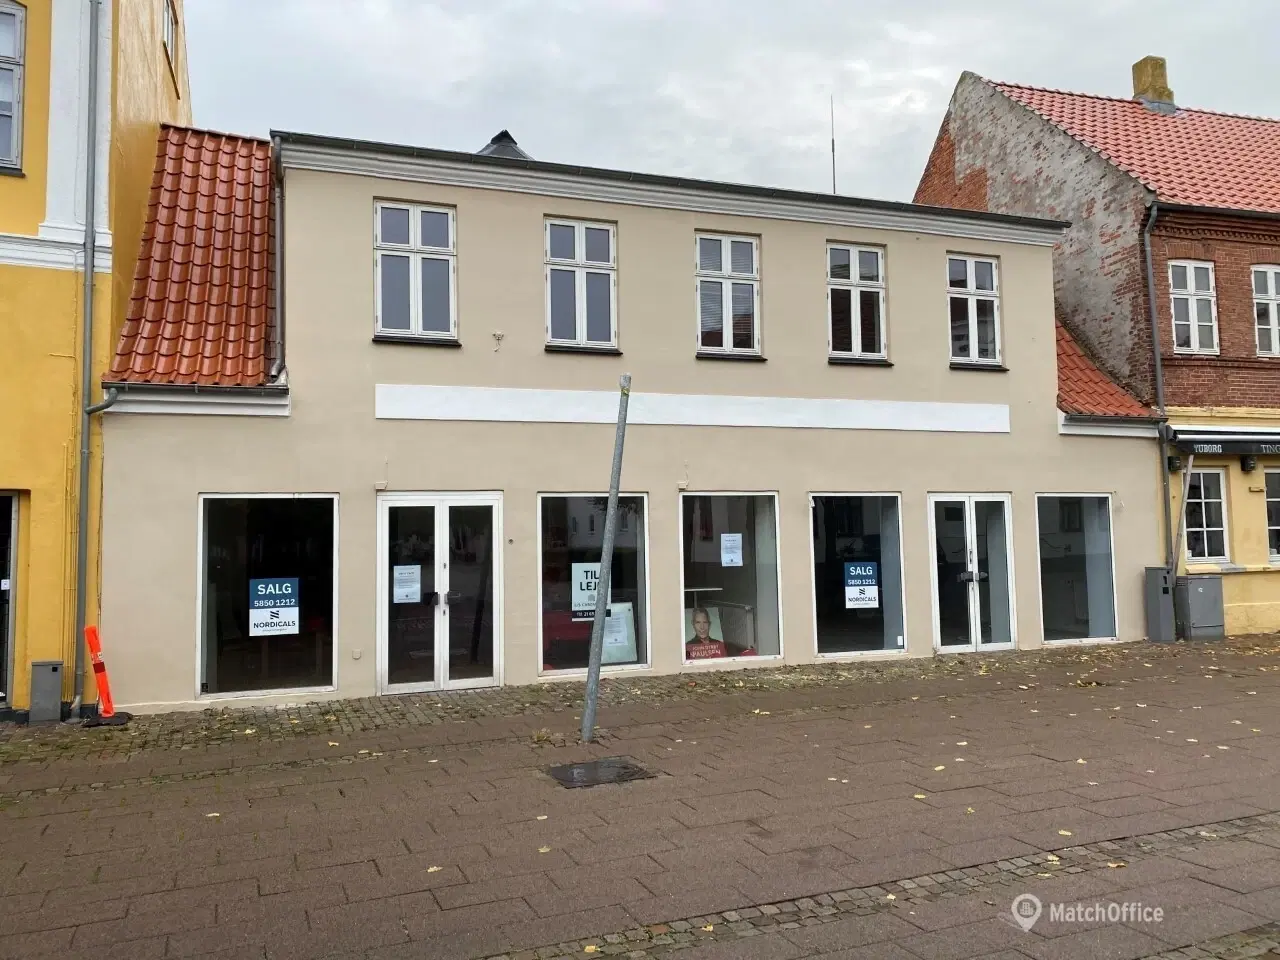 Billede 1 - To butikker midt på Algade i Korsør - udlejes separat eller samlet